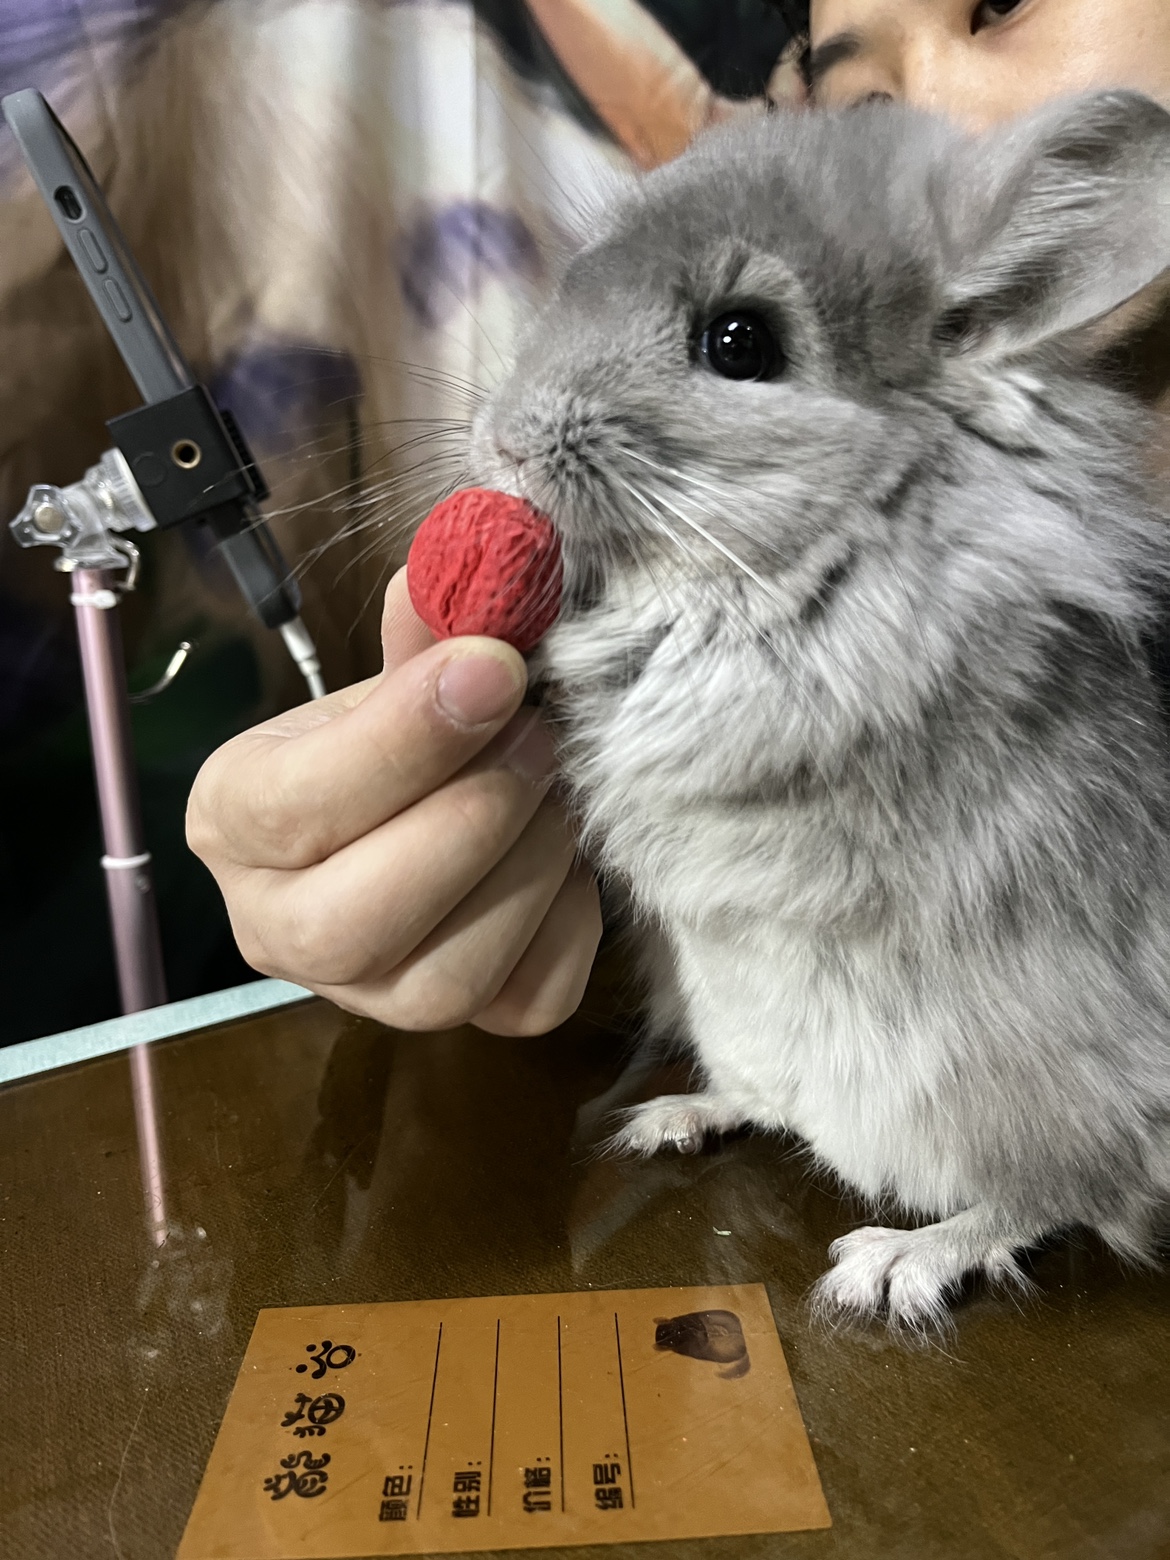 草莓形状互动零食磨牙玩具建立信任关系 甜菜粉 龙猫谷特有产品